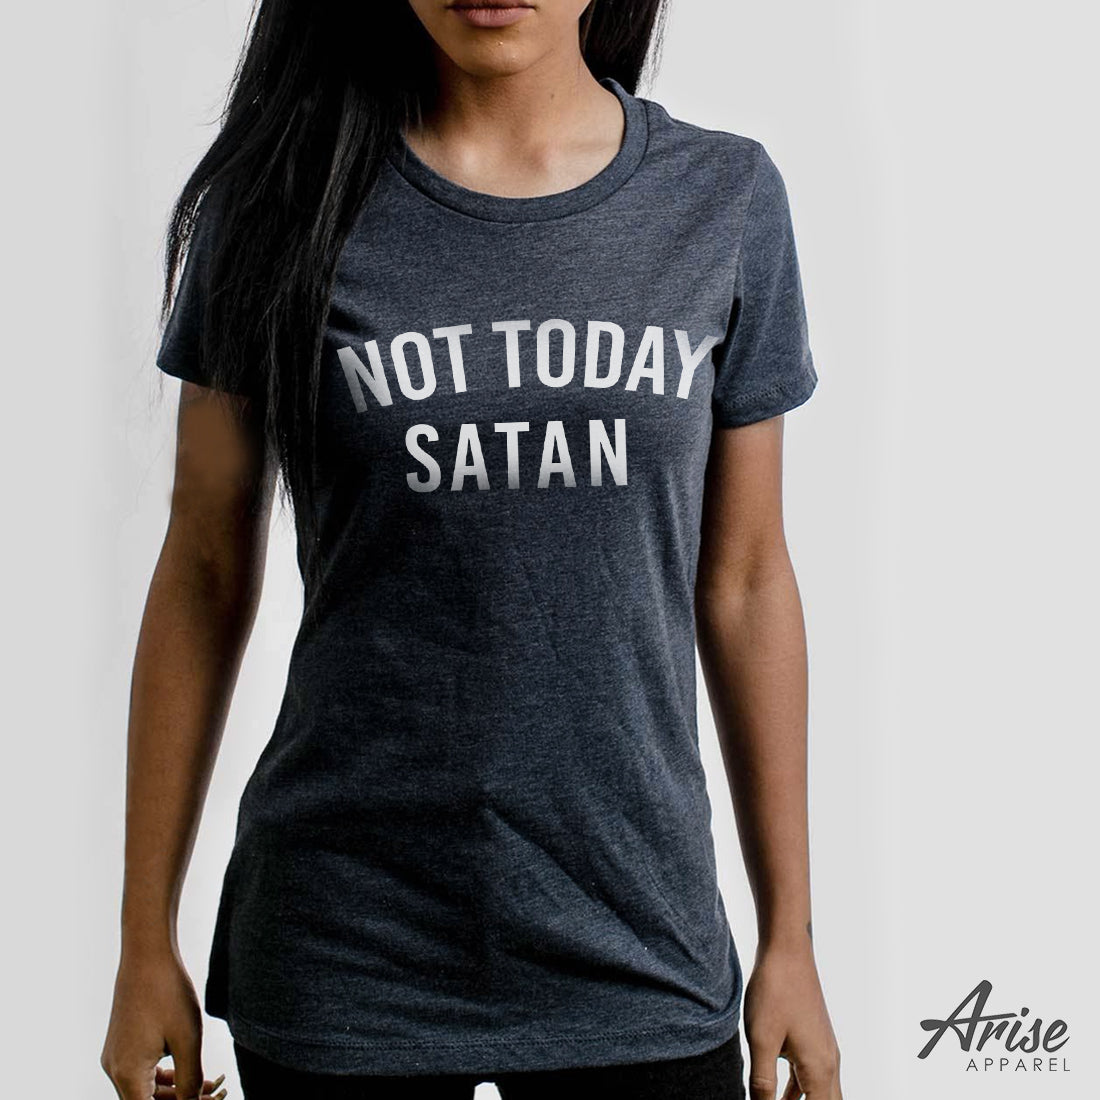 Not Today Satan Christian T-Shirt